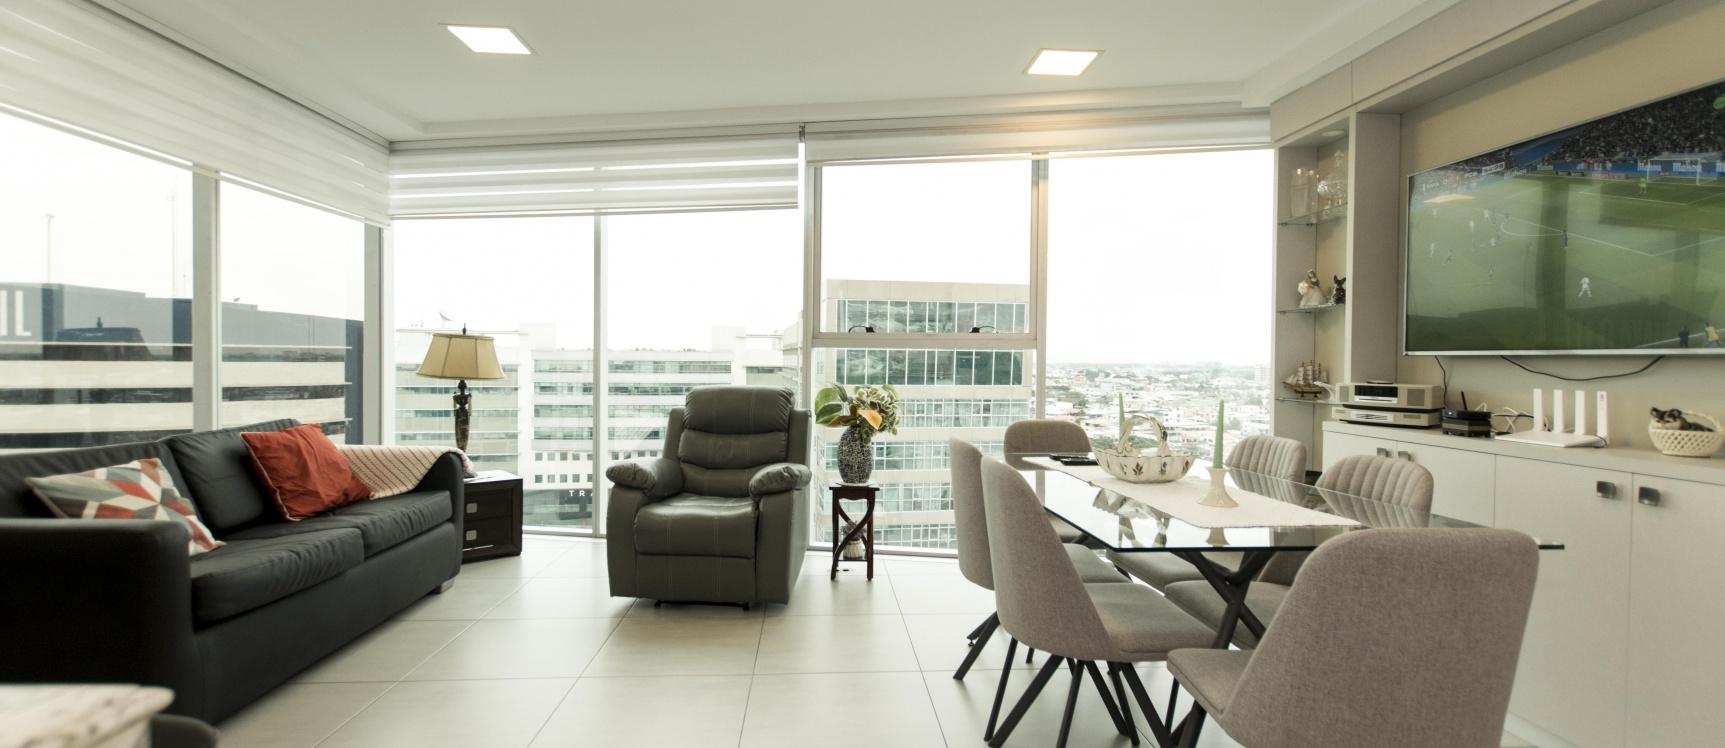 GeoBienes - Departamento amoblado en venta ubicado en el Edificio Quo Luxury Apartments - Plusvalia Guayaquil Casas de venta y alquiler Inmobiliaria Ecuador